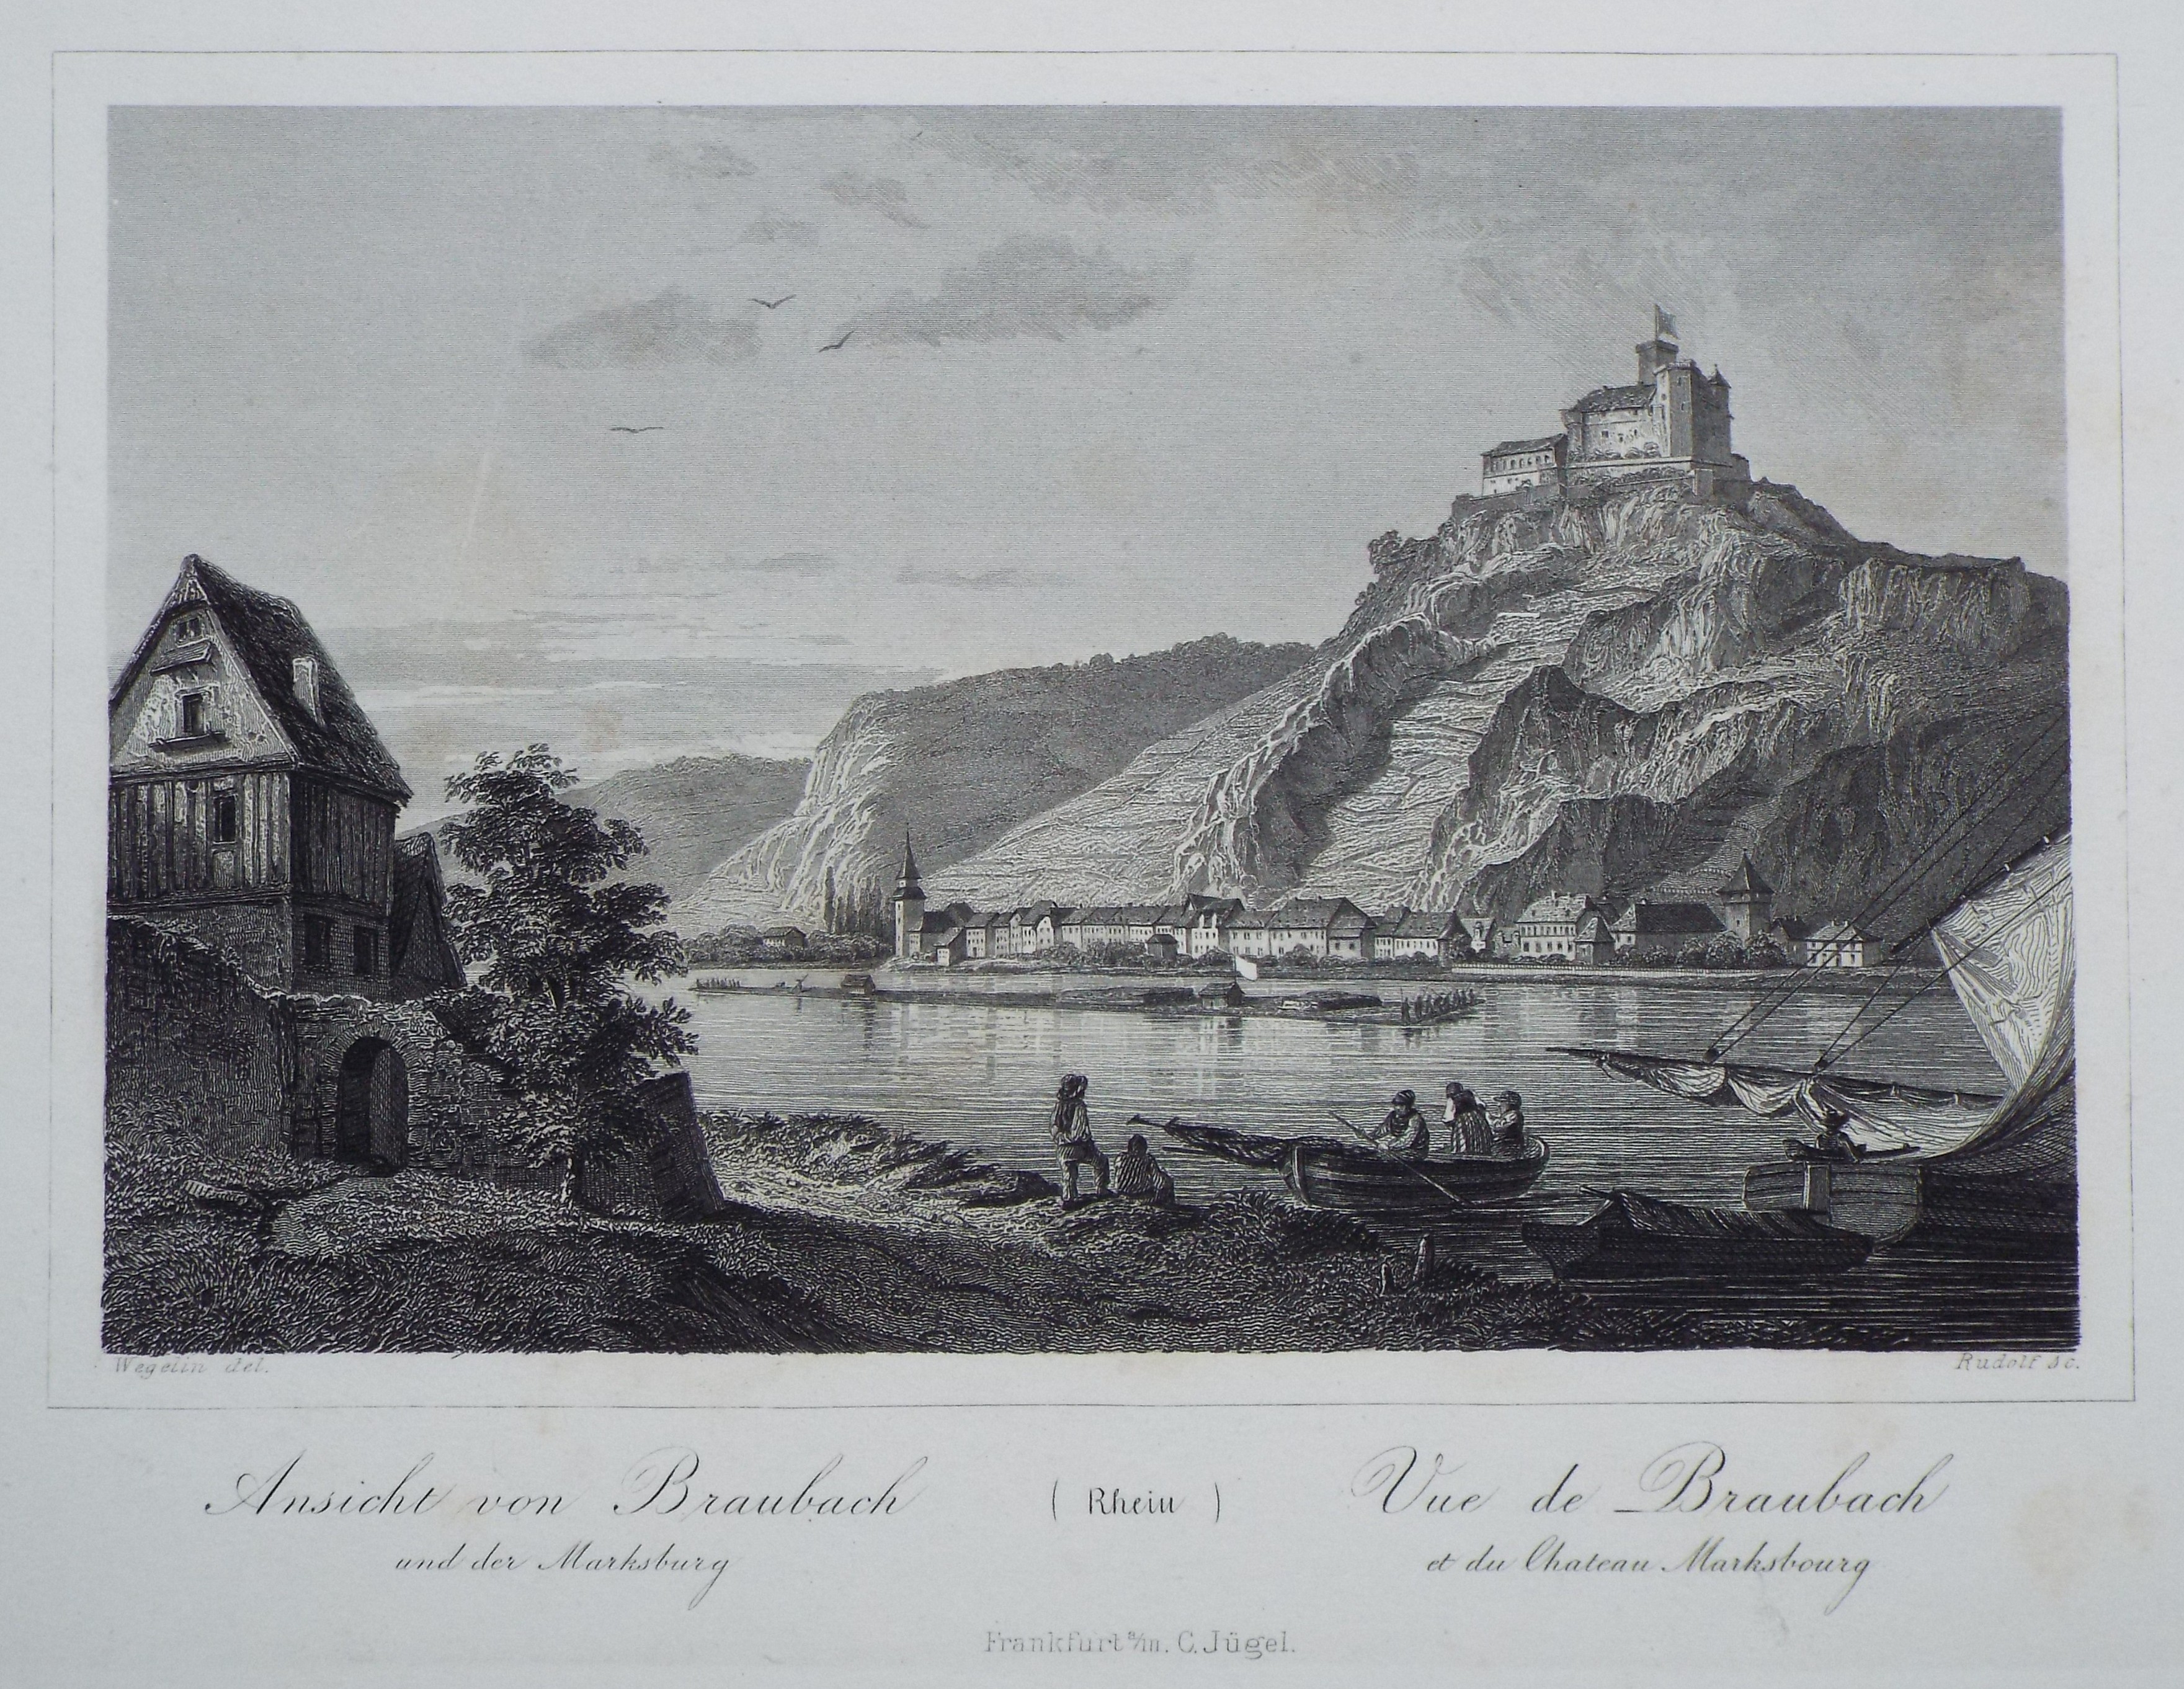 Print - Ansicht von Braubach und der Marksburg (Rhein) Vue de Branbach et du Chateau Marksbourg - 